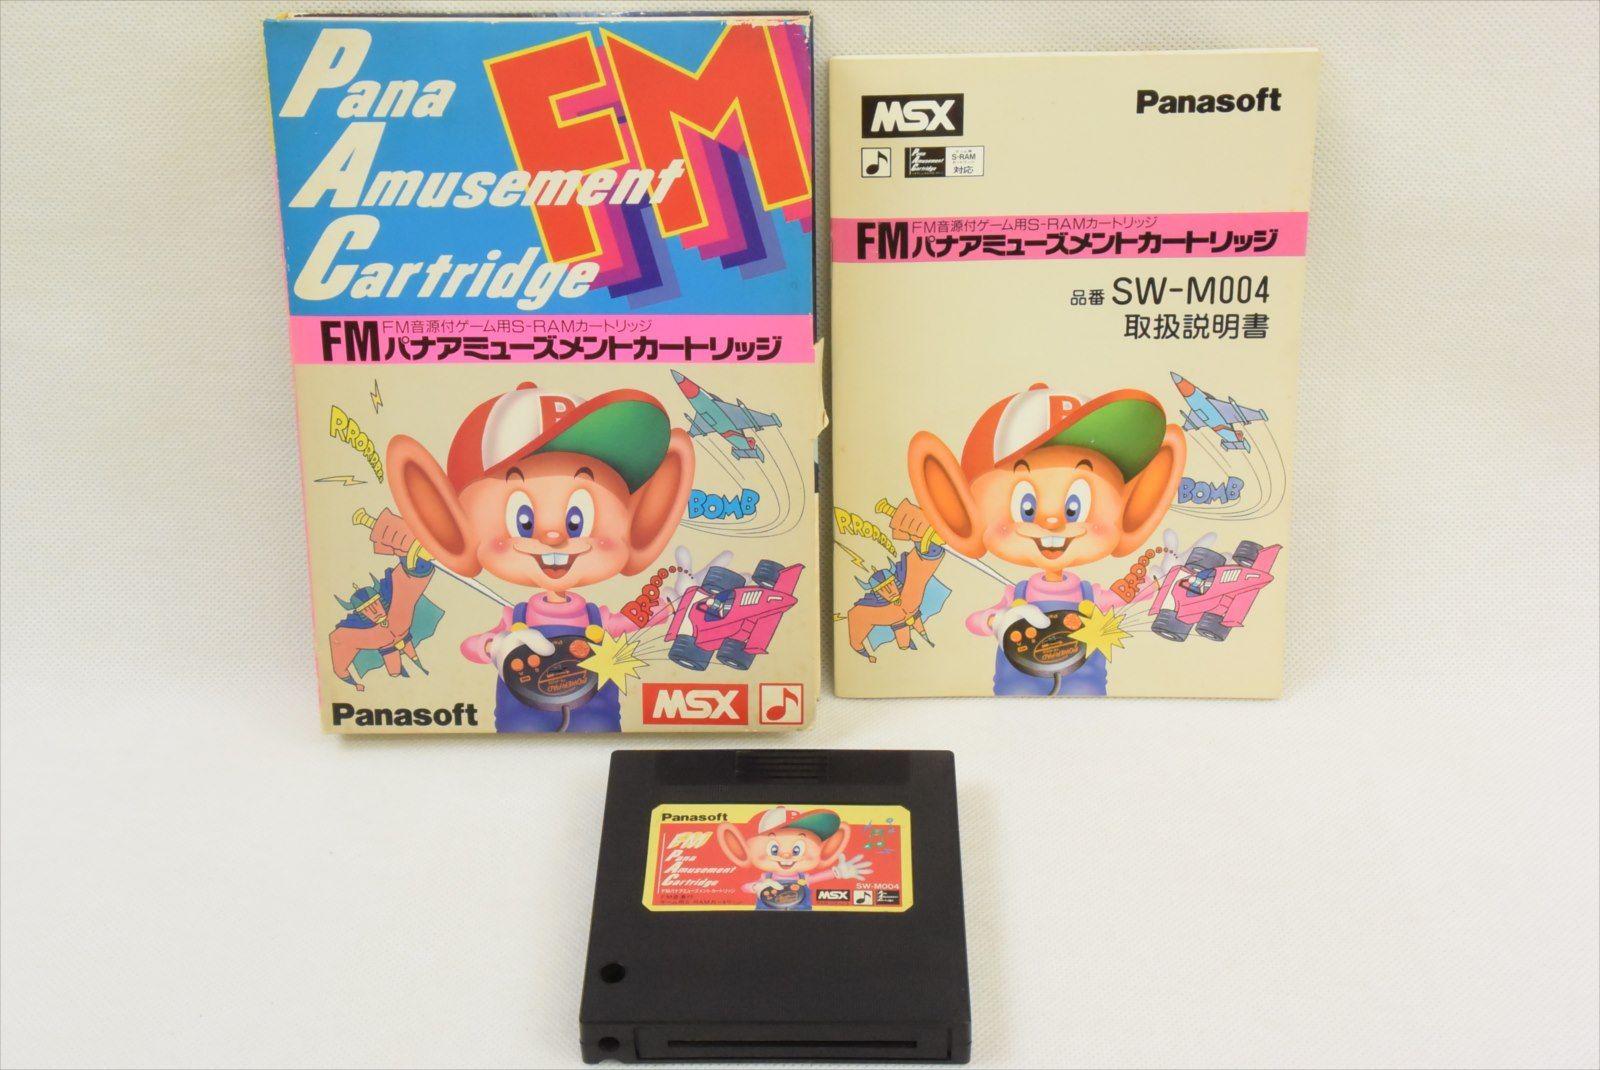 MSX FM パナアミューズメントカートリッジ - パソコン